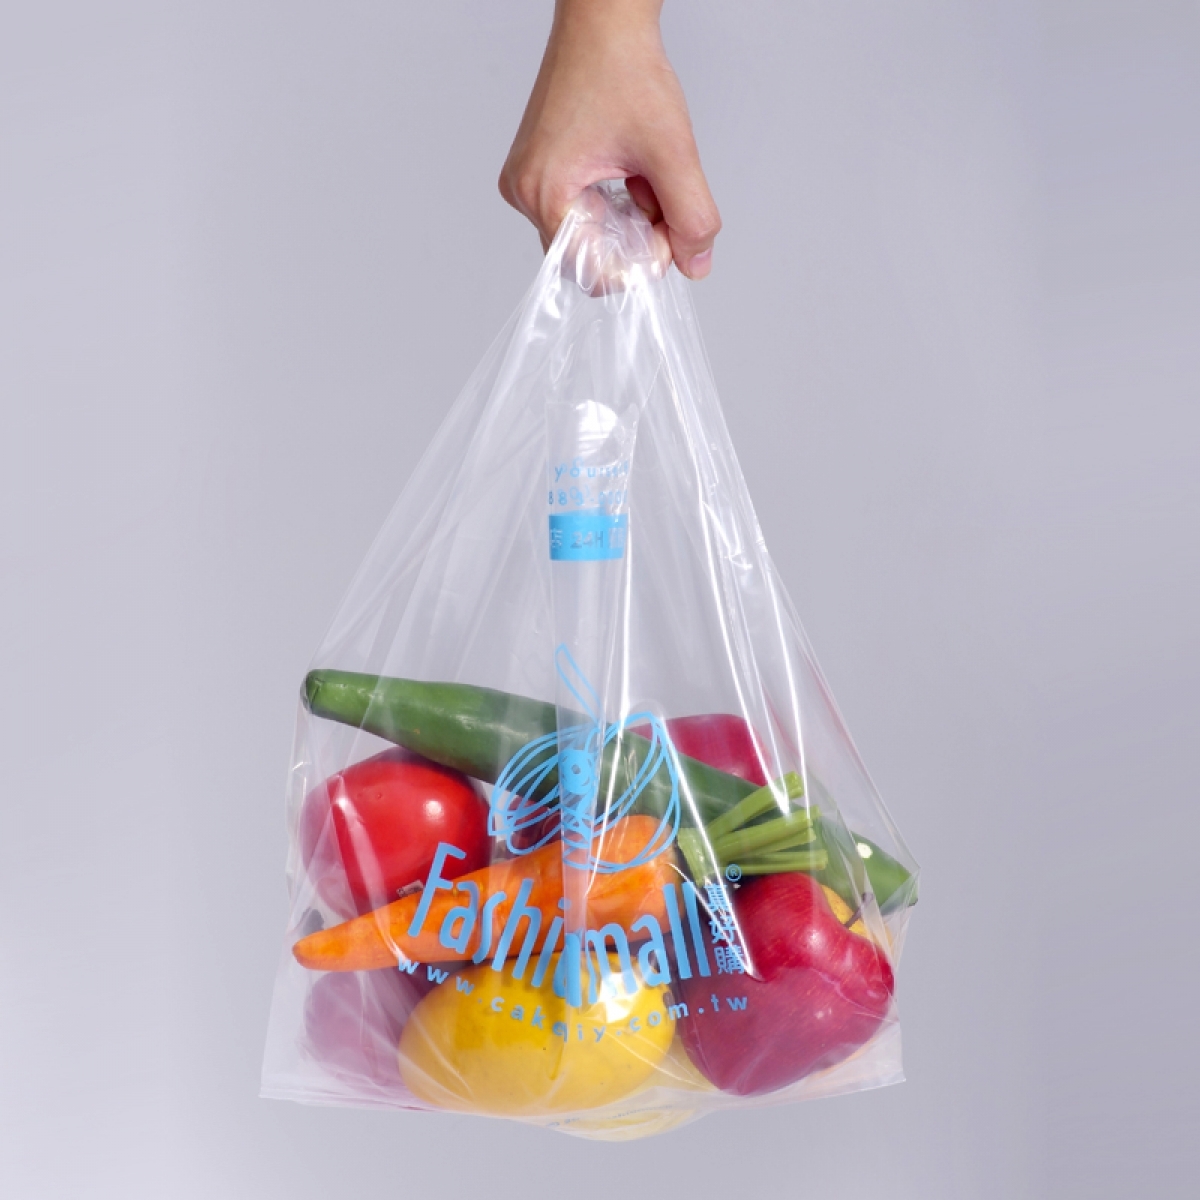 厂家塑料袋定制logo背心马甲方便袋外卖打包塑料袋定做超市购物袋-阿里巴巴